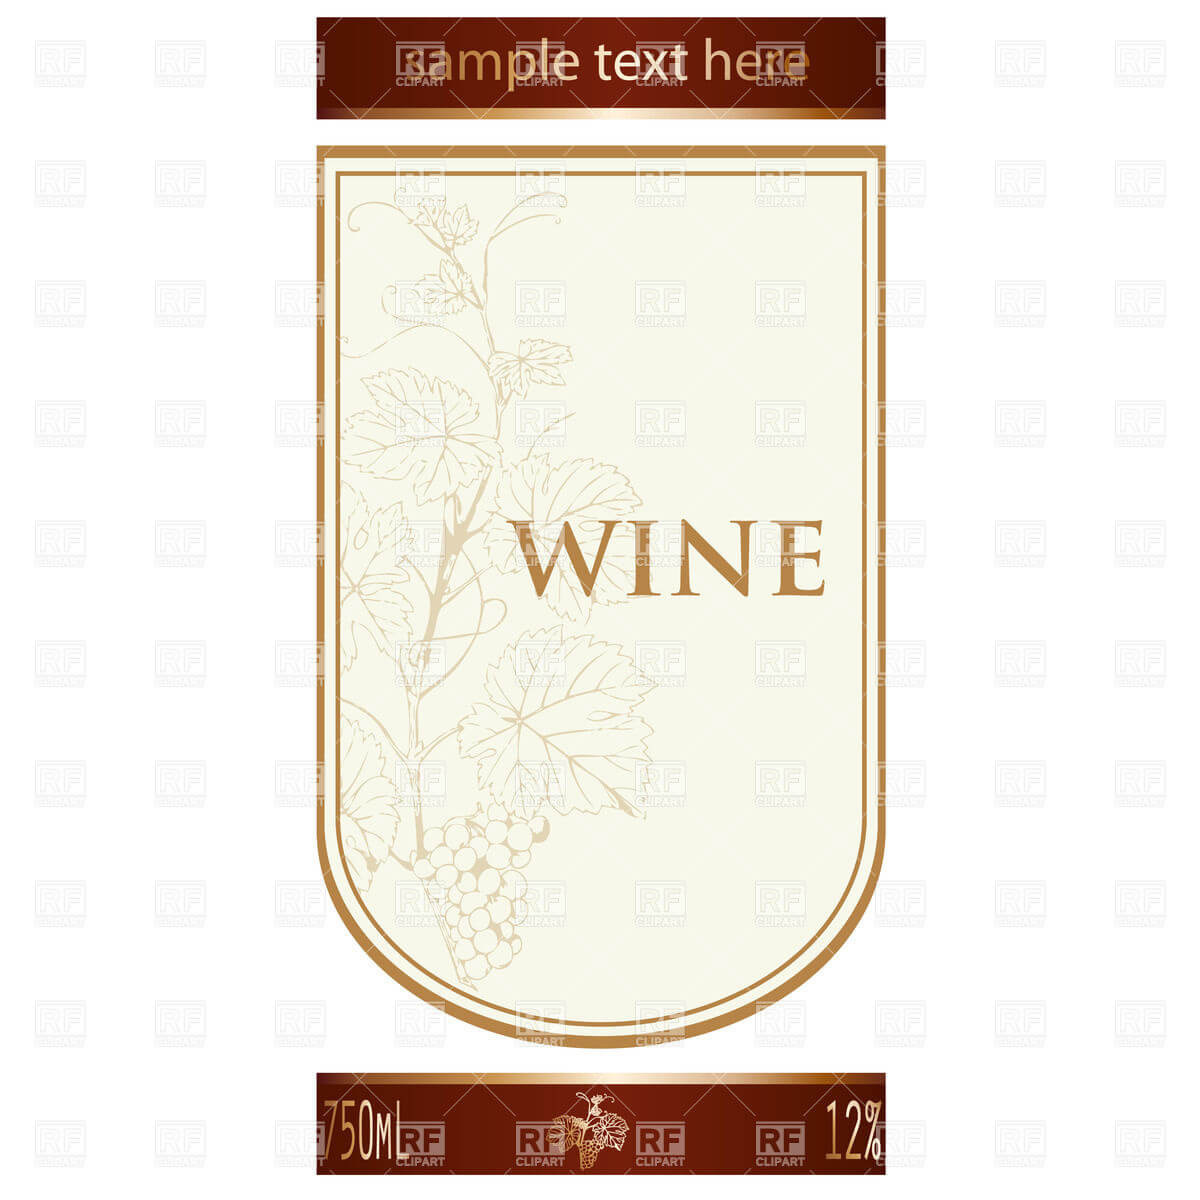 002 Template Ideas Free Wine Label Remarkable Bottle Inside Blank Wine Label Template